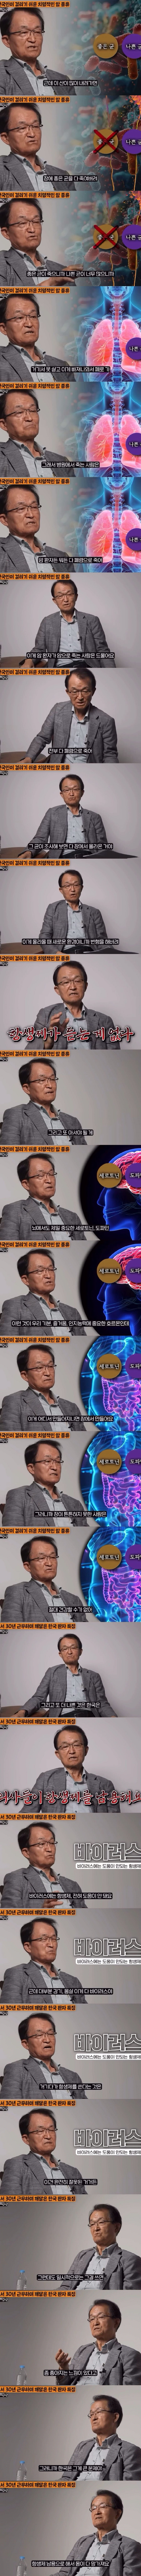 암센터 교수가 말하는 한국 의료 문제점.jpg